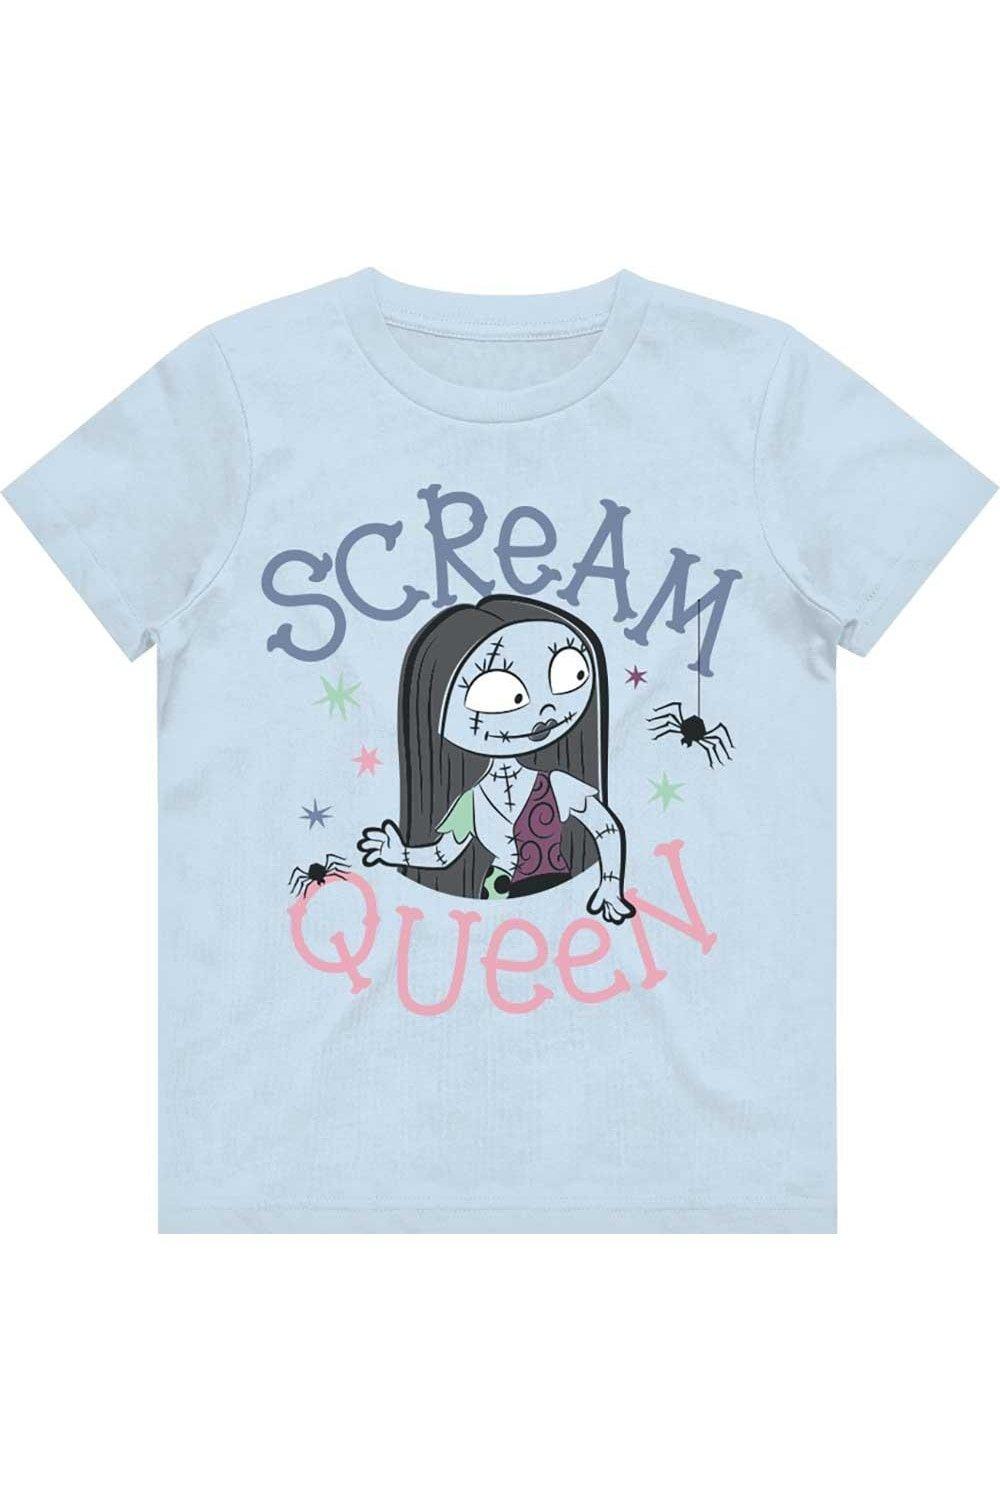 Scream Queen Cotton T-Shirt